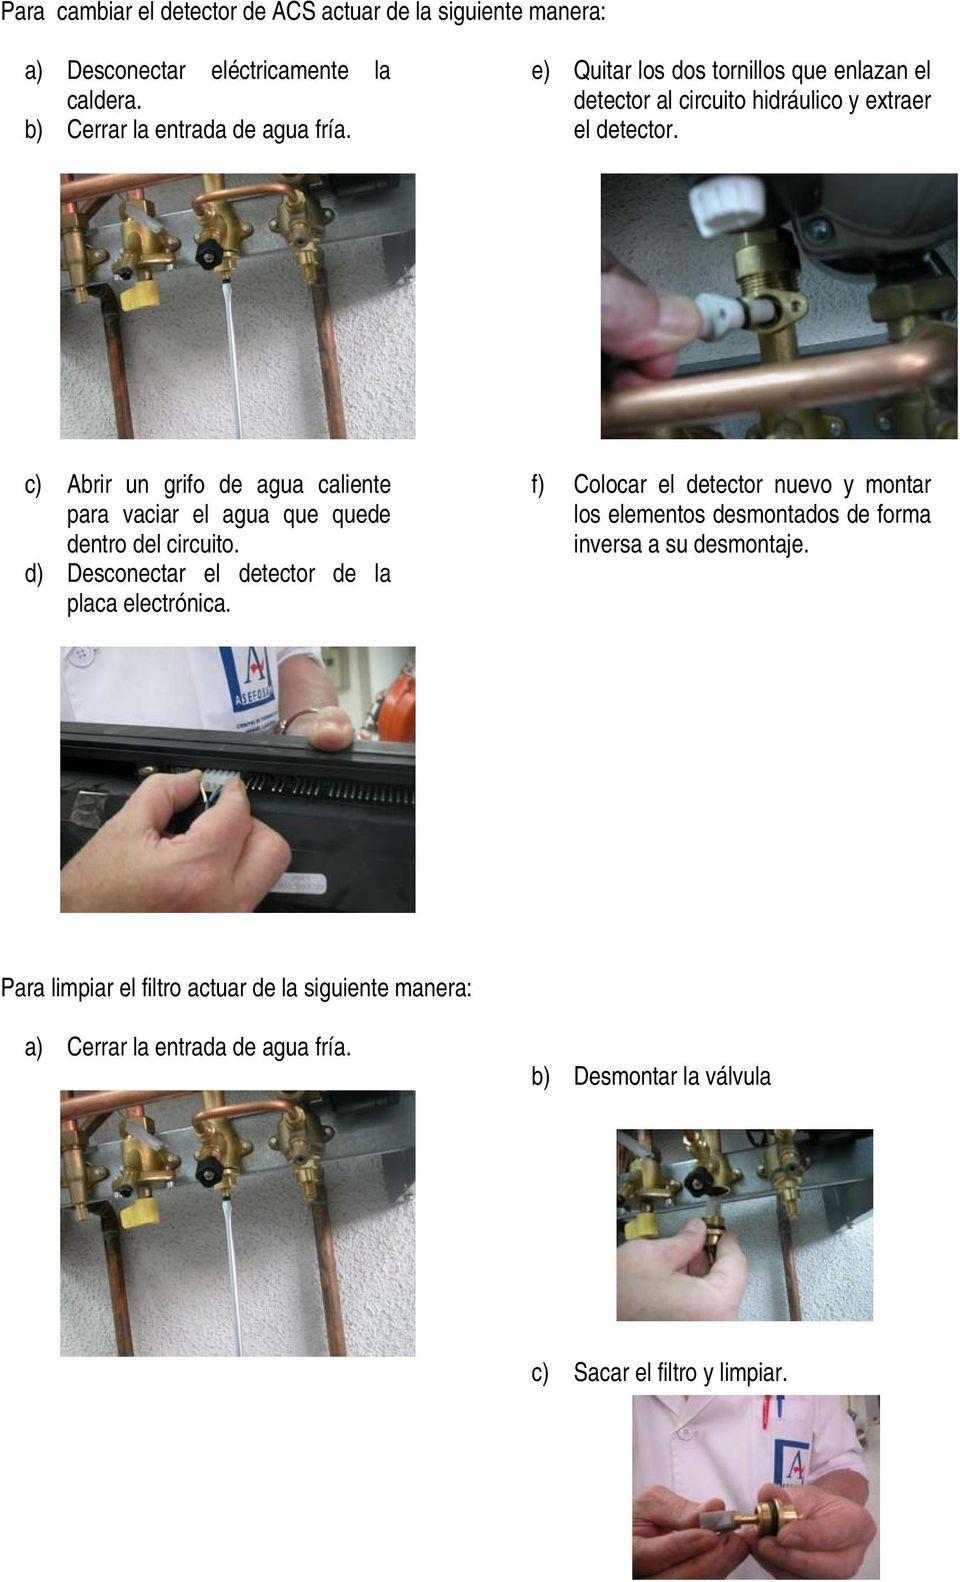 c) Abrir un grifo de agua caliente para vaciar el agua que quede dentro del circuito. d) Desconectar el detector de la placa electrónica.